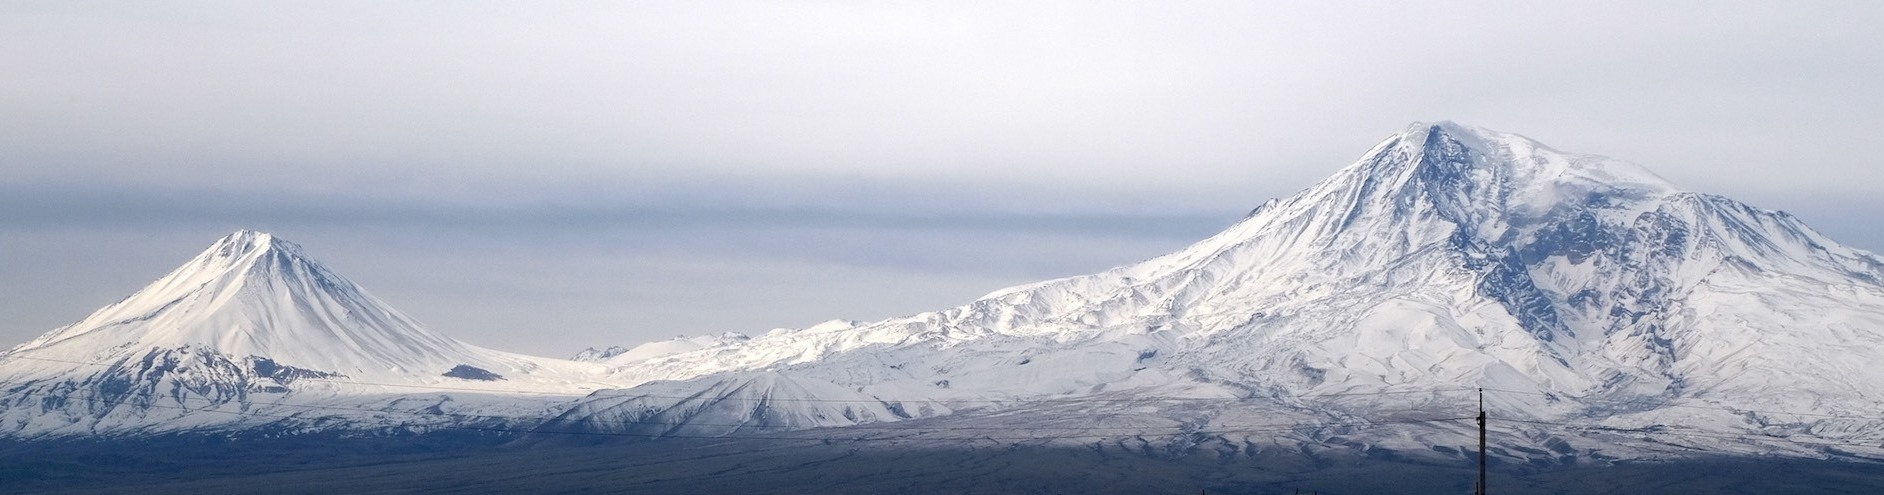 ararat valley